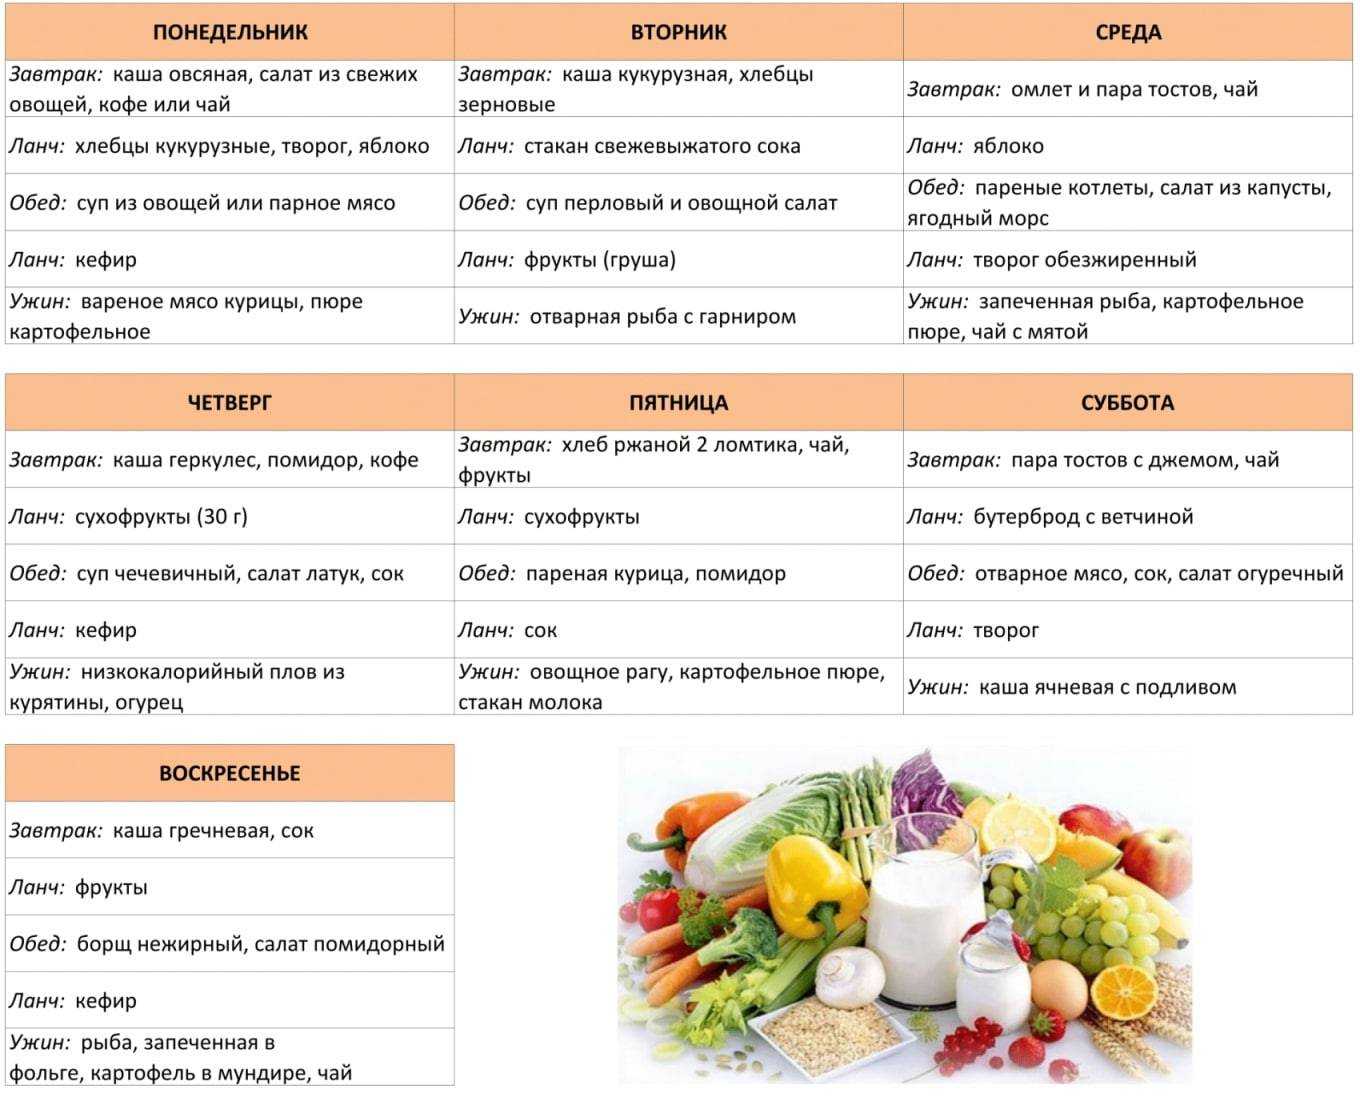 Диета и питание при сердечной недостаточности: меню диеты №10, 10а и кареля